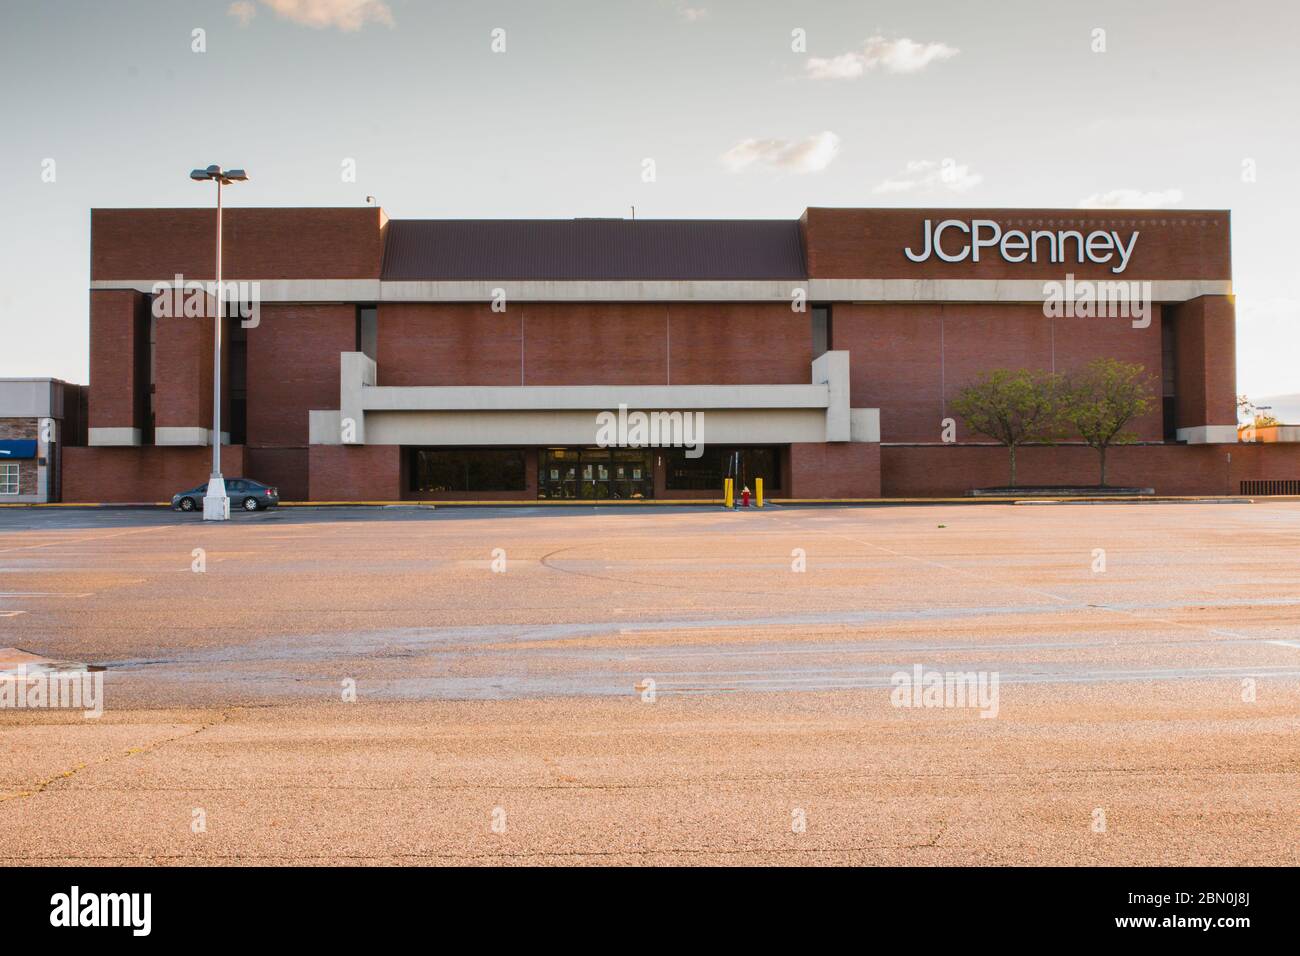 Covid-19 von 2020 zwingt Einzelhandelsgeschäfte zu schließen. Bild eines leeren Parkplatzes vor einem JC Penny-Einzelhandelsgeschäft in New Jersey. Stockfoto